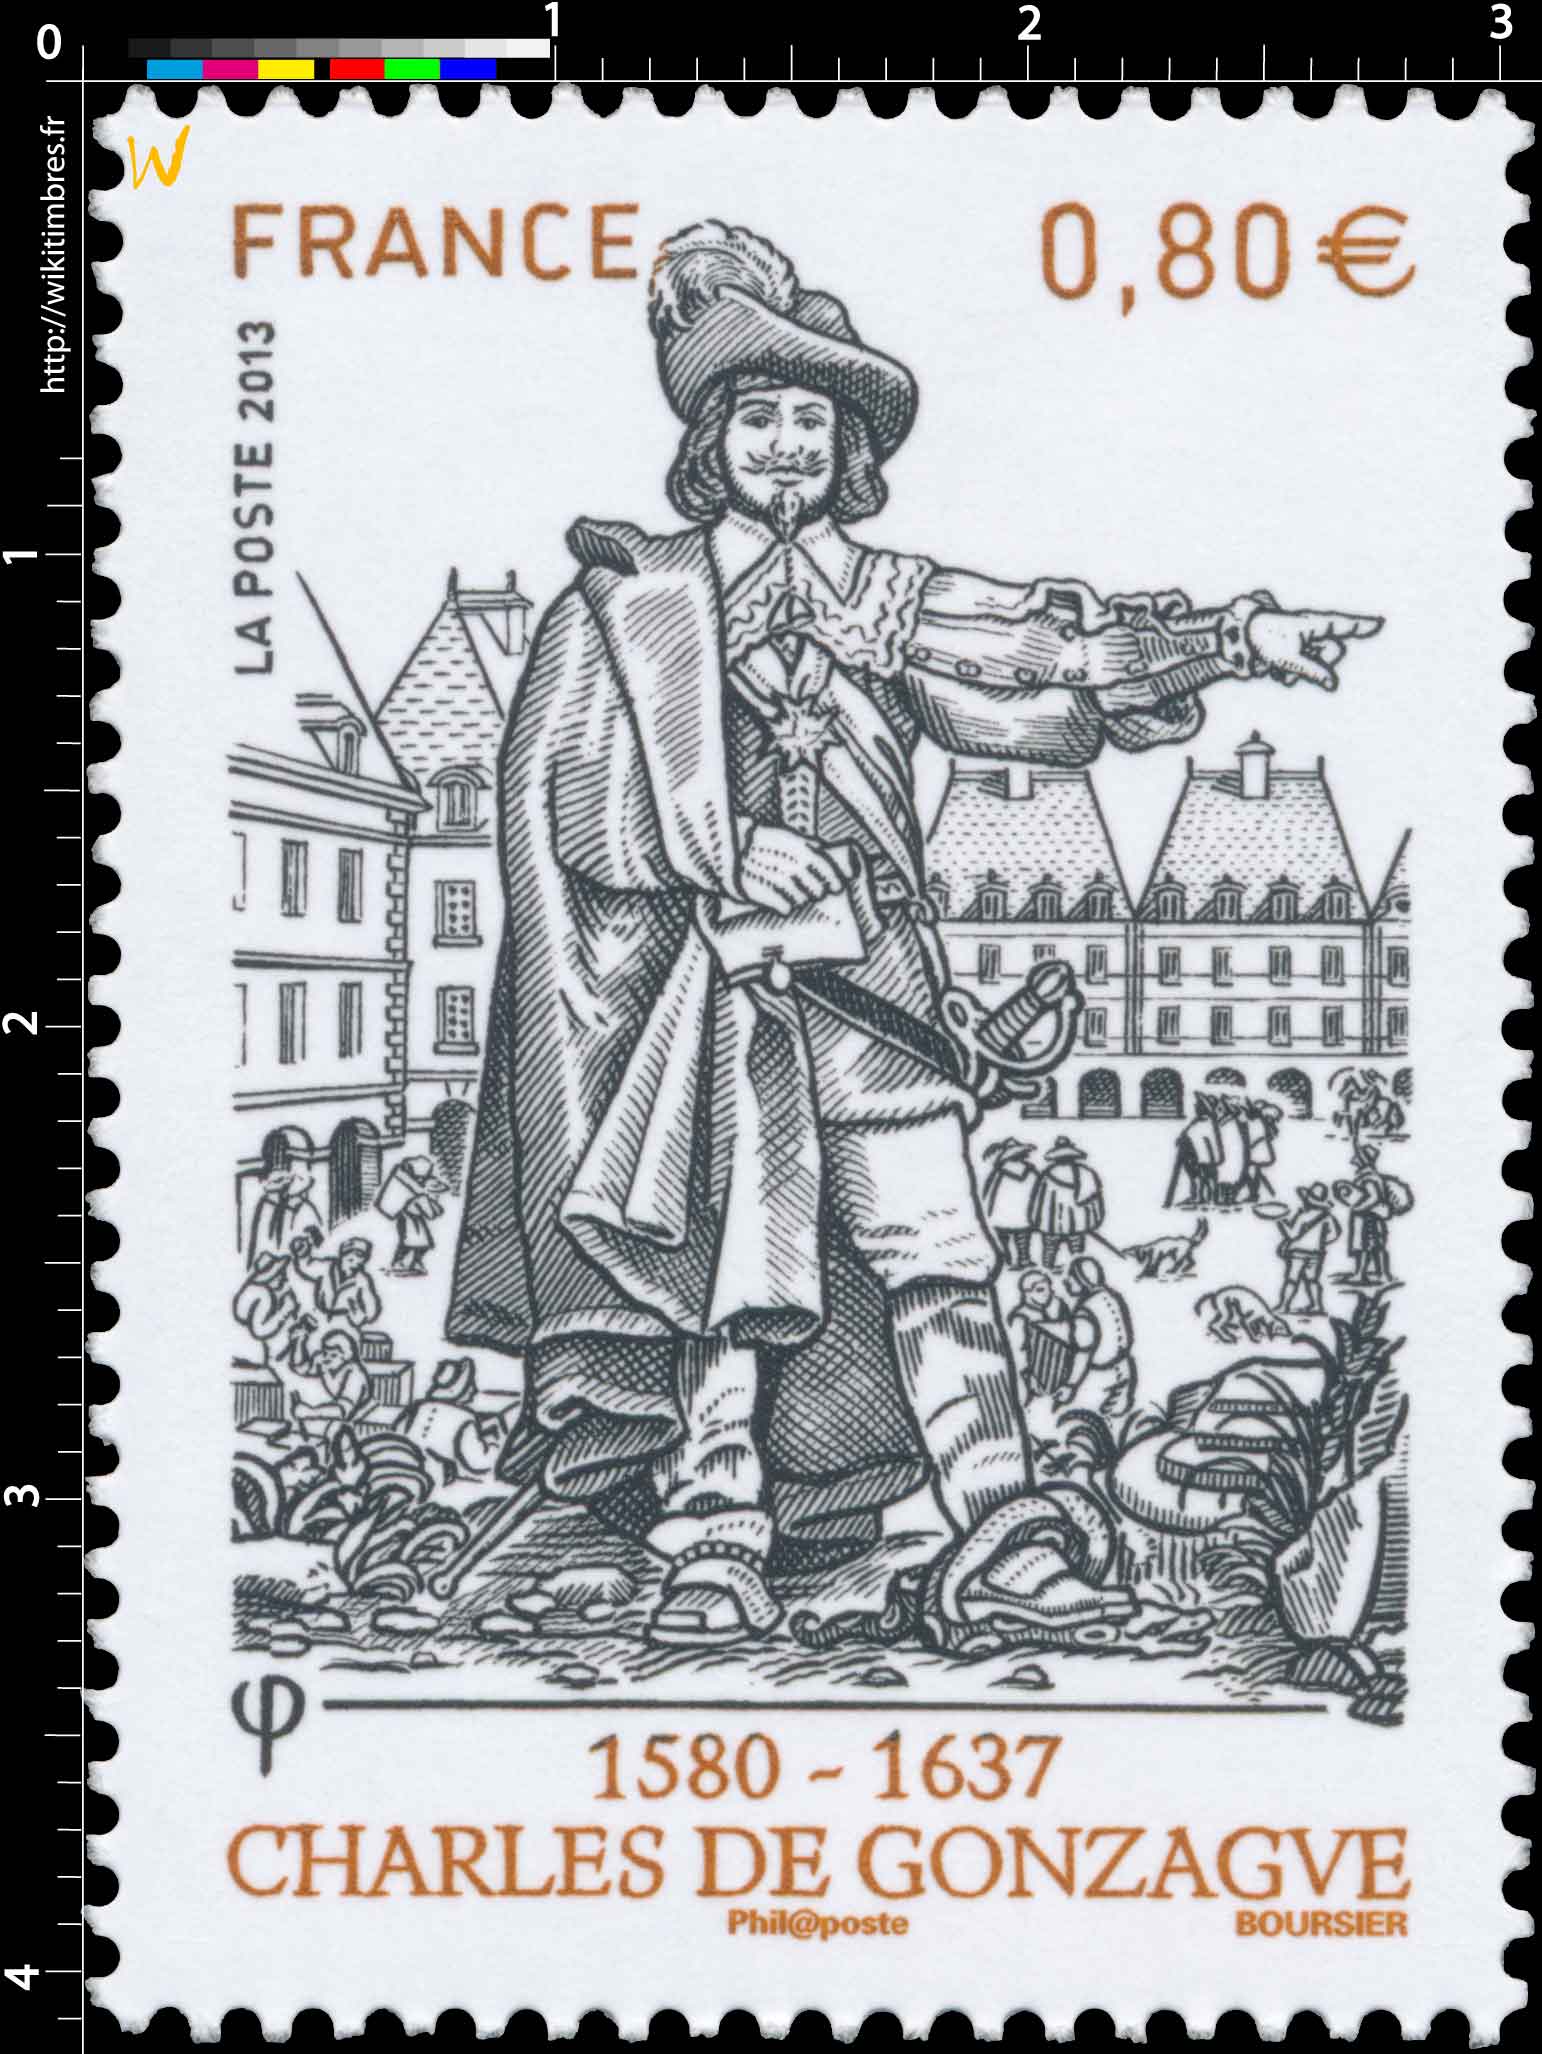 2013 Charles de Gonzague 1580 - 1637